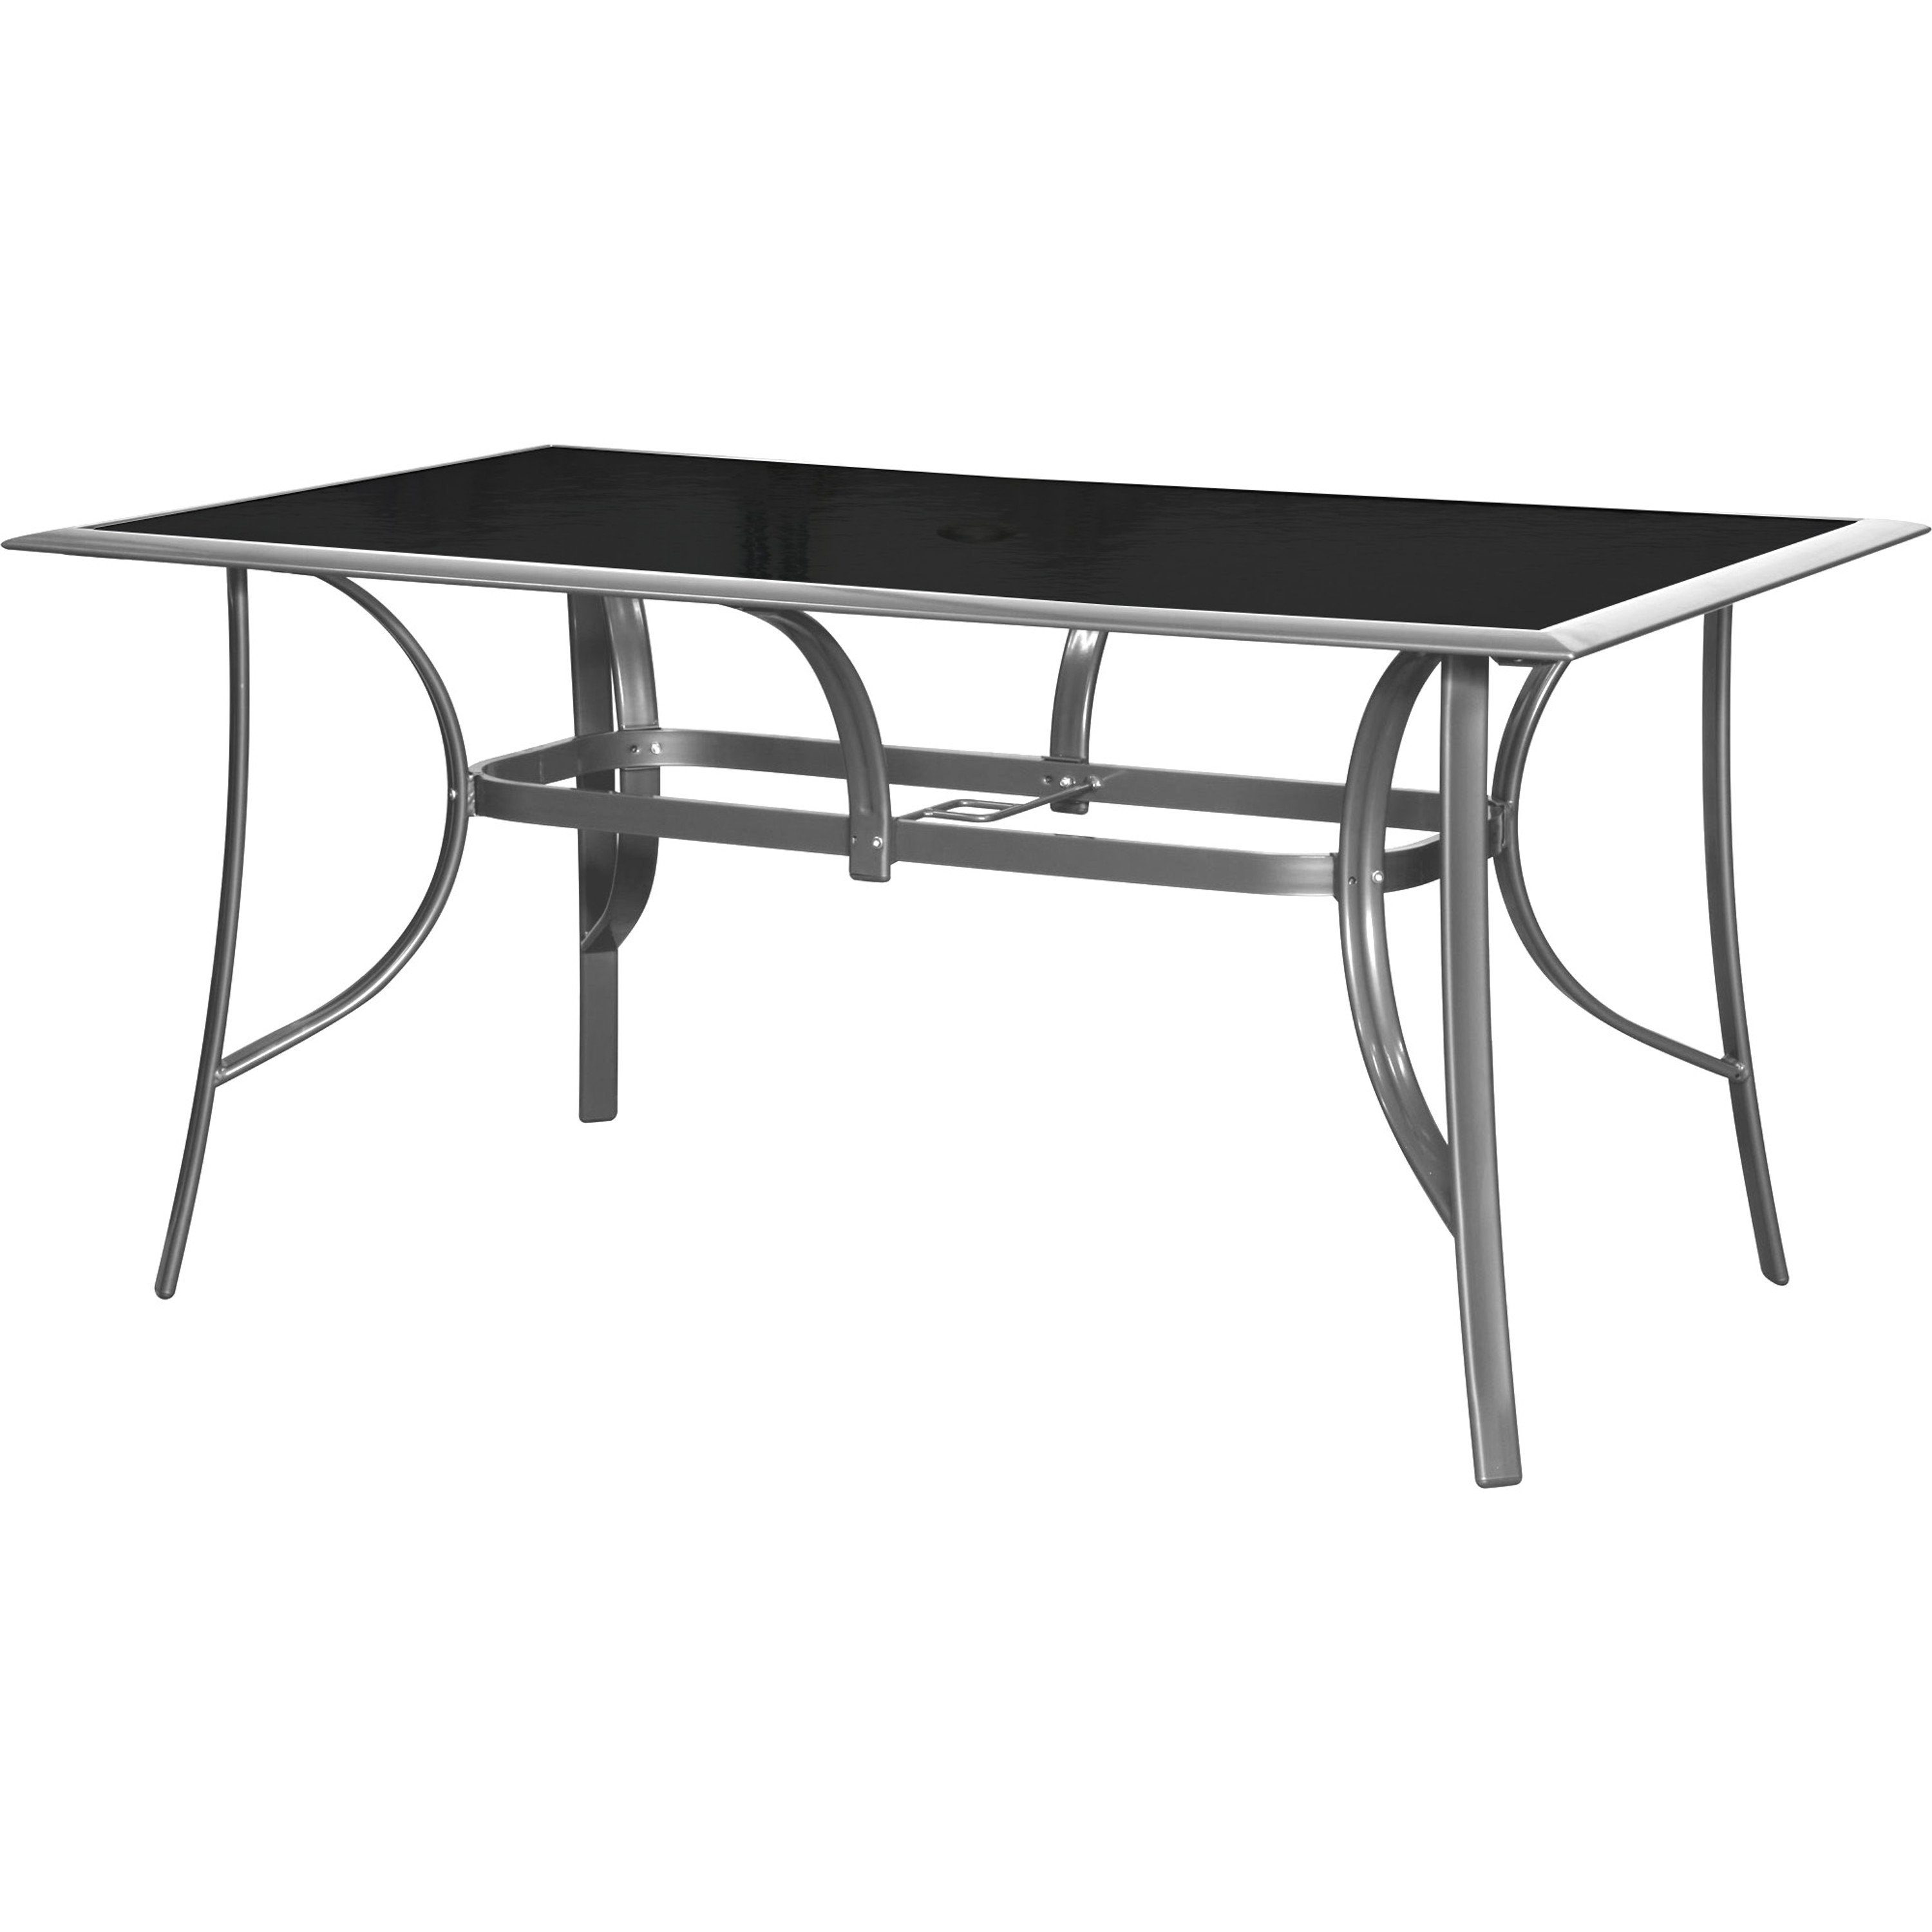 (ESG) Gartentisch style x - 150 ib cm 90 Gartentisch Sicherheitsglas Jamaica (Tisch), Gartentisch